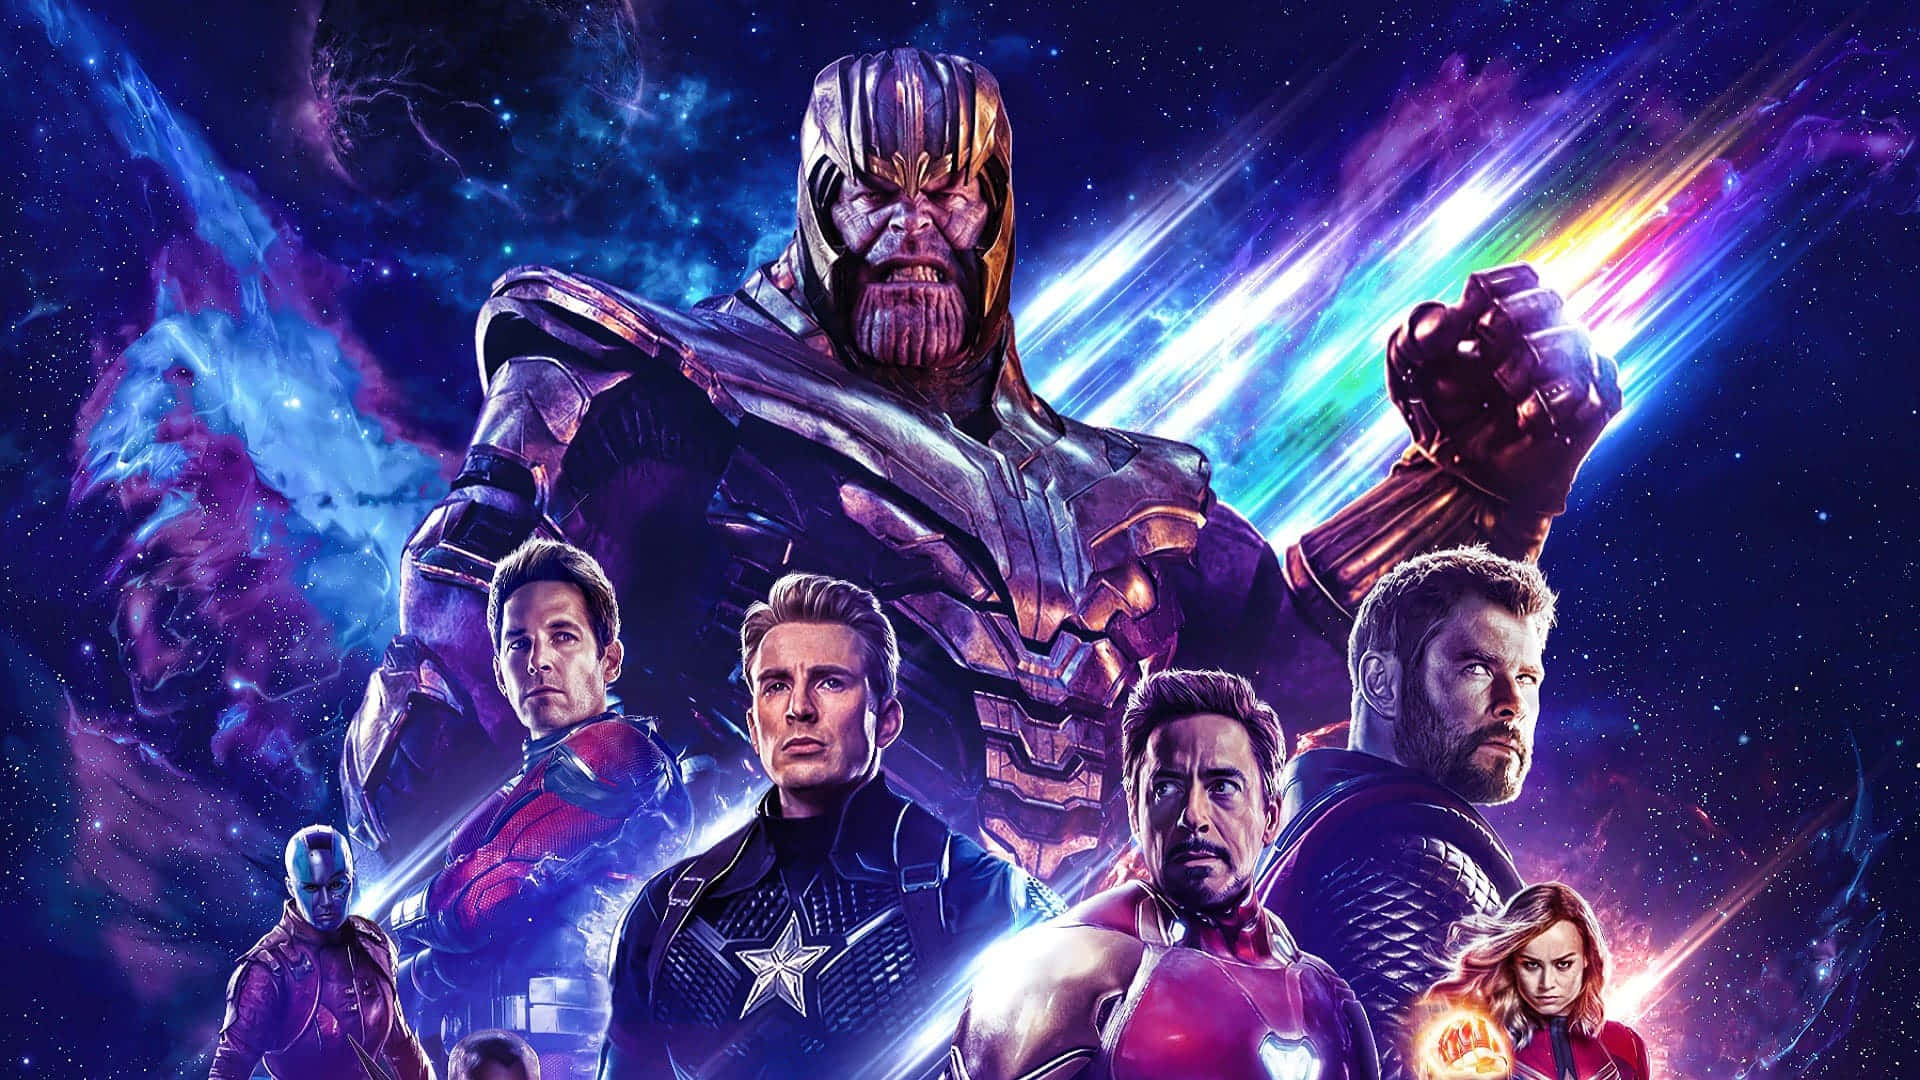 Cast of Marvel's Avengers: Endgame Wallpaper